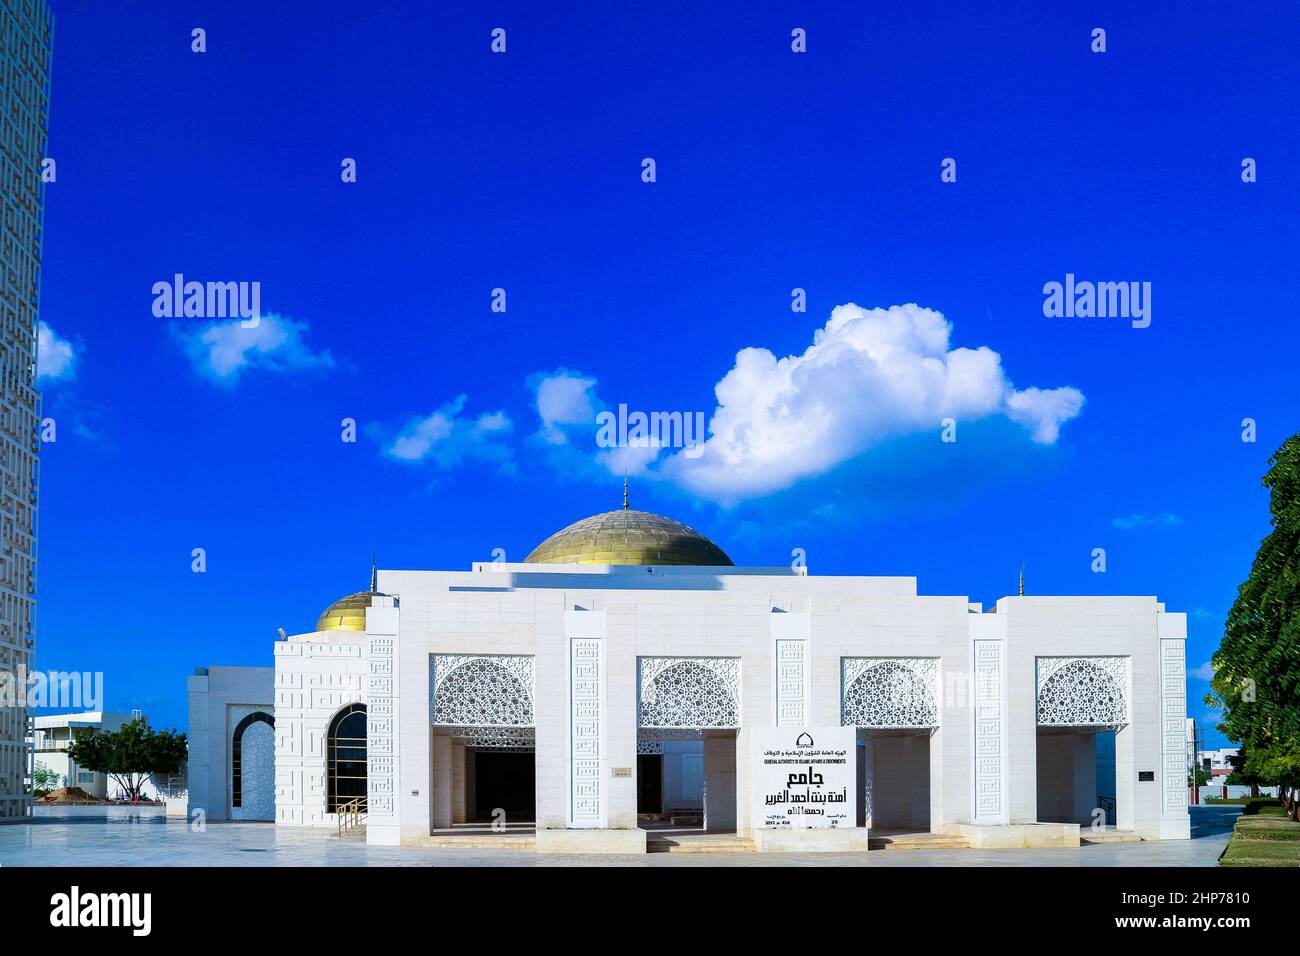 Amna bint Ahmad Al Ghurair Mosque - Ajman | UAE Stock Photo